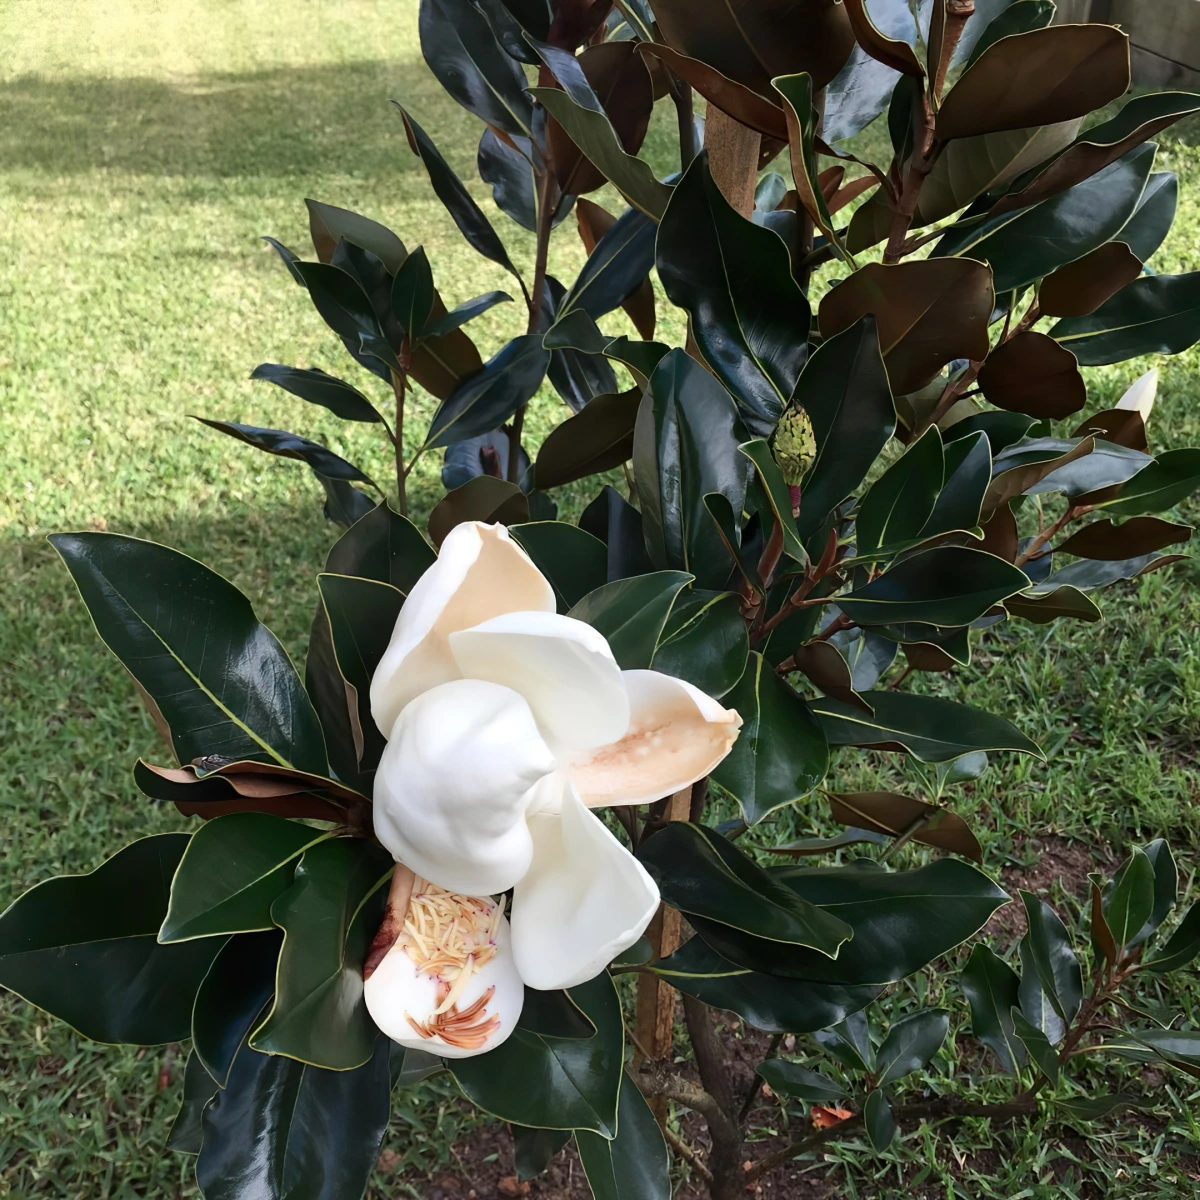 magnolia compacte taille arbre variete little gem fleurs blanches feuilles vert fonce